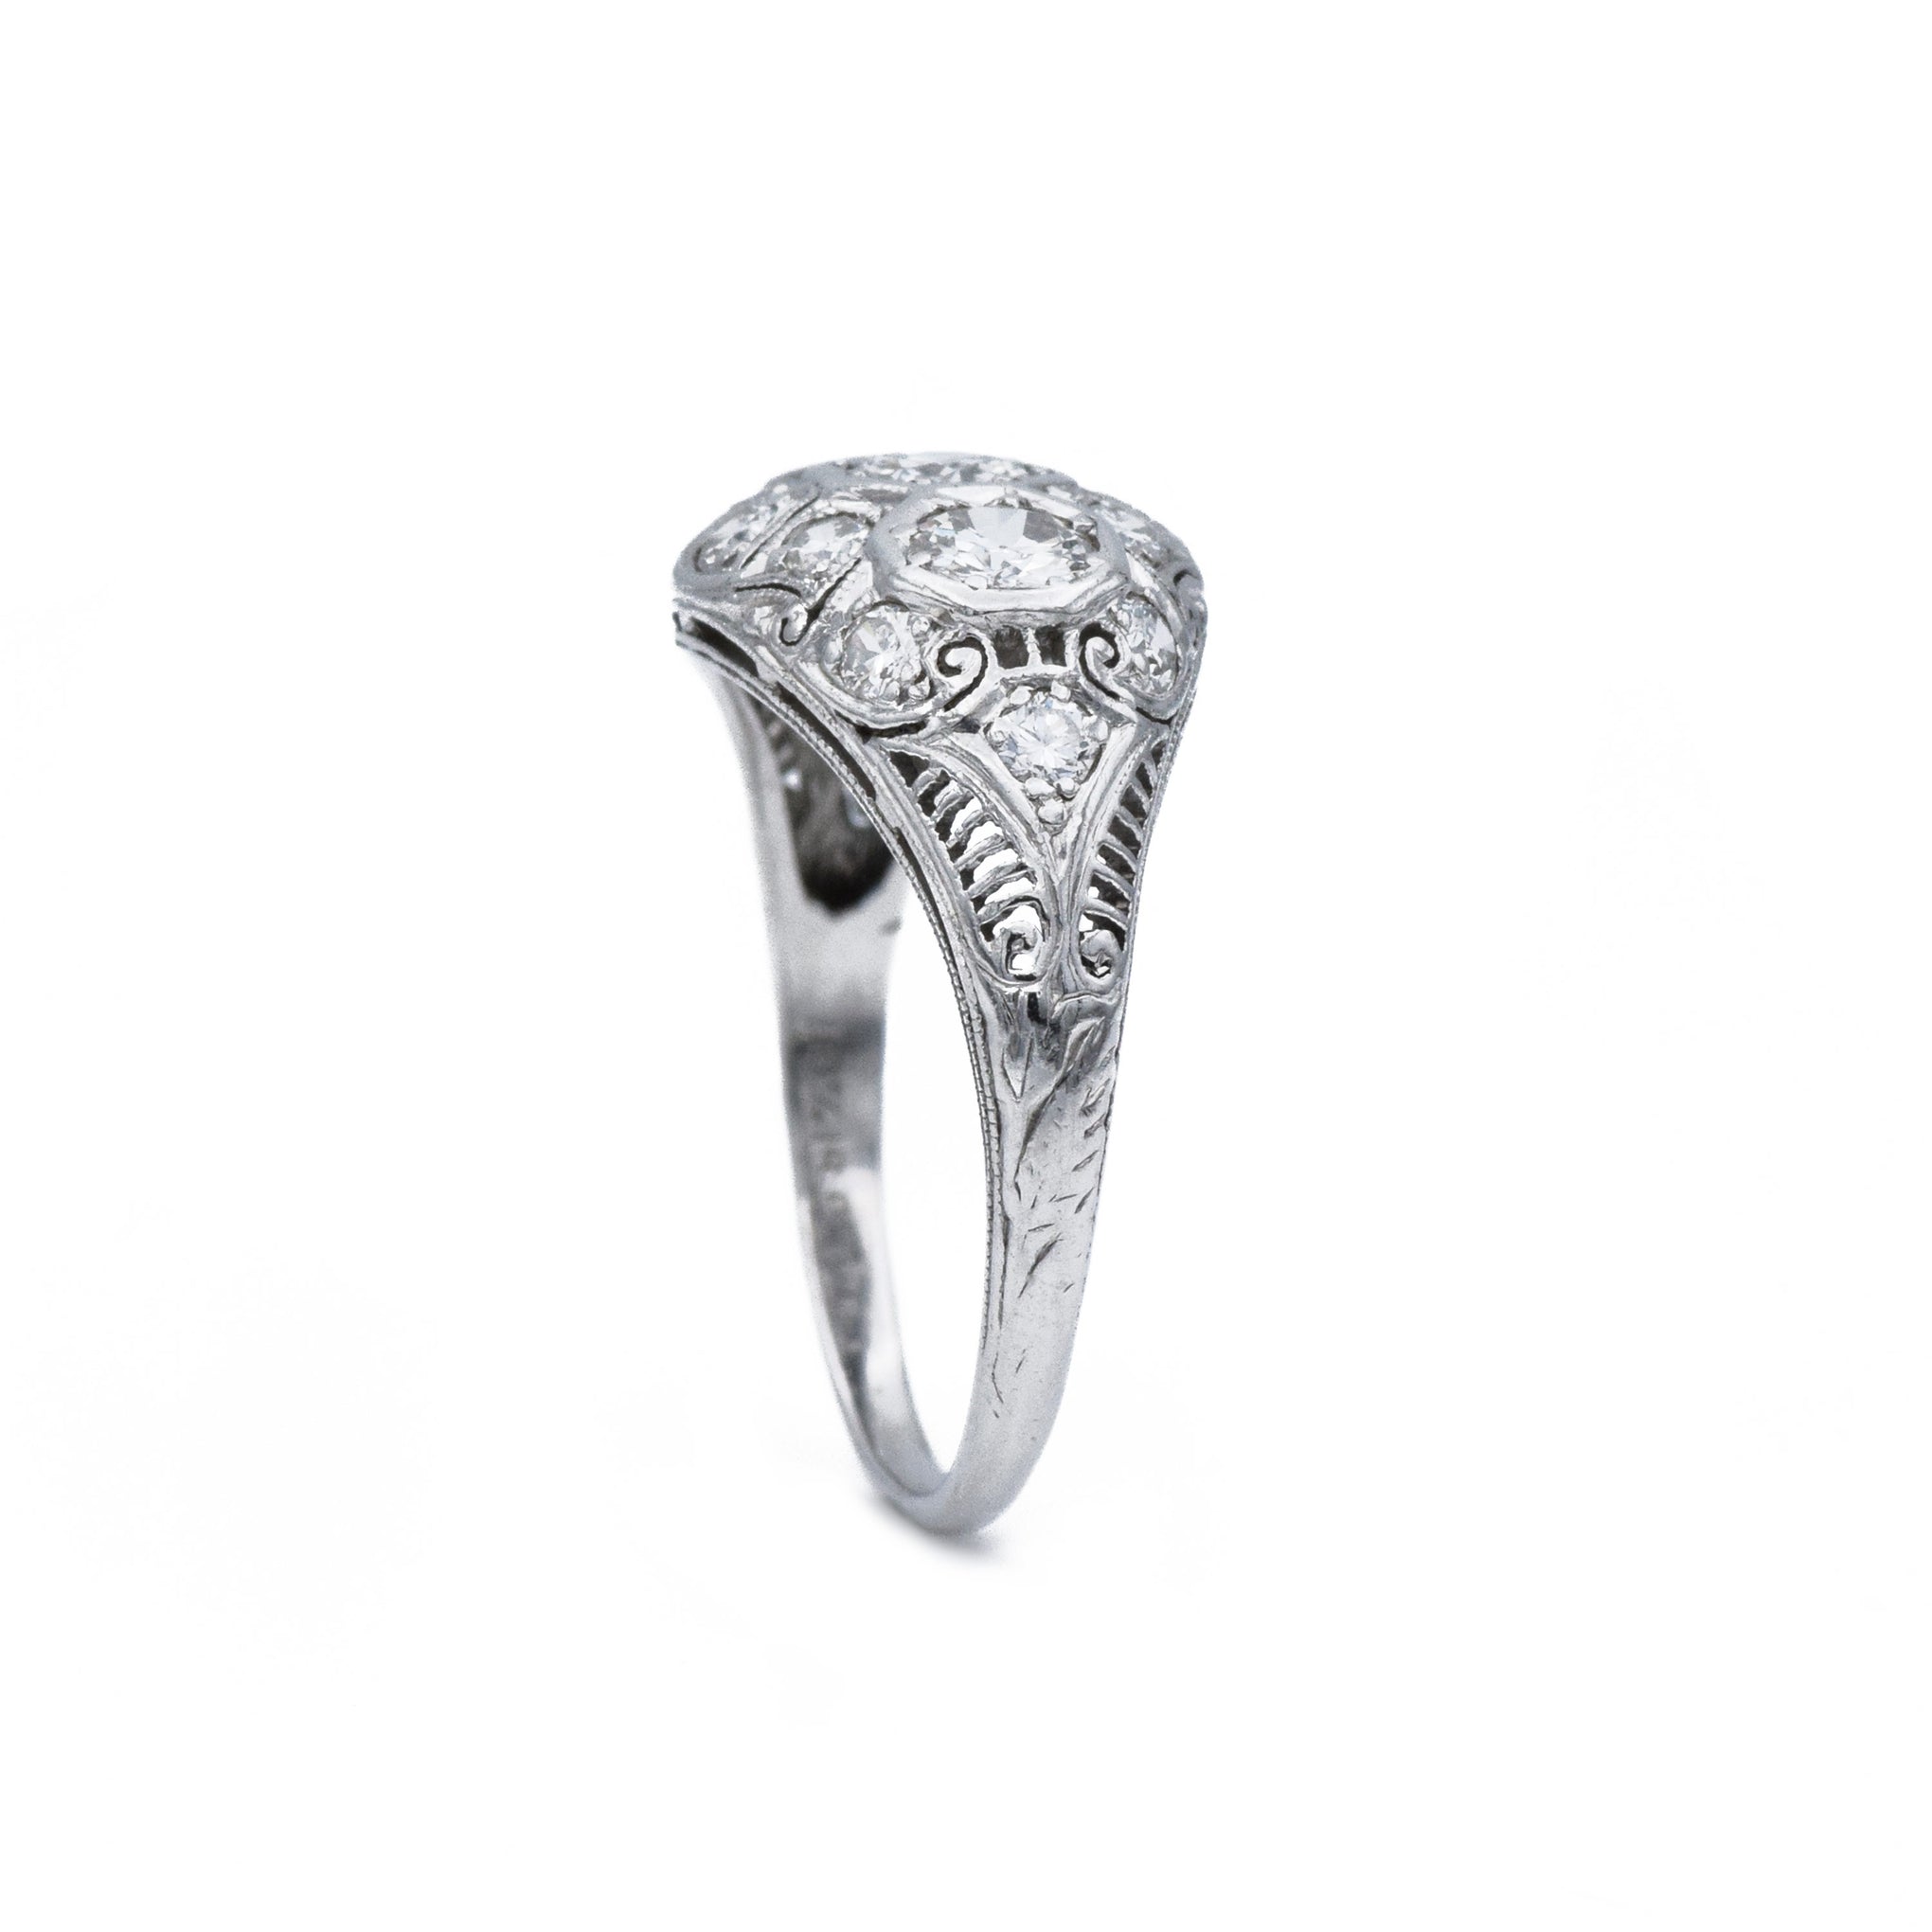 Estate c.1920 Platinum Diamond Filigree Ring